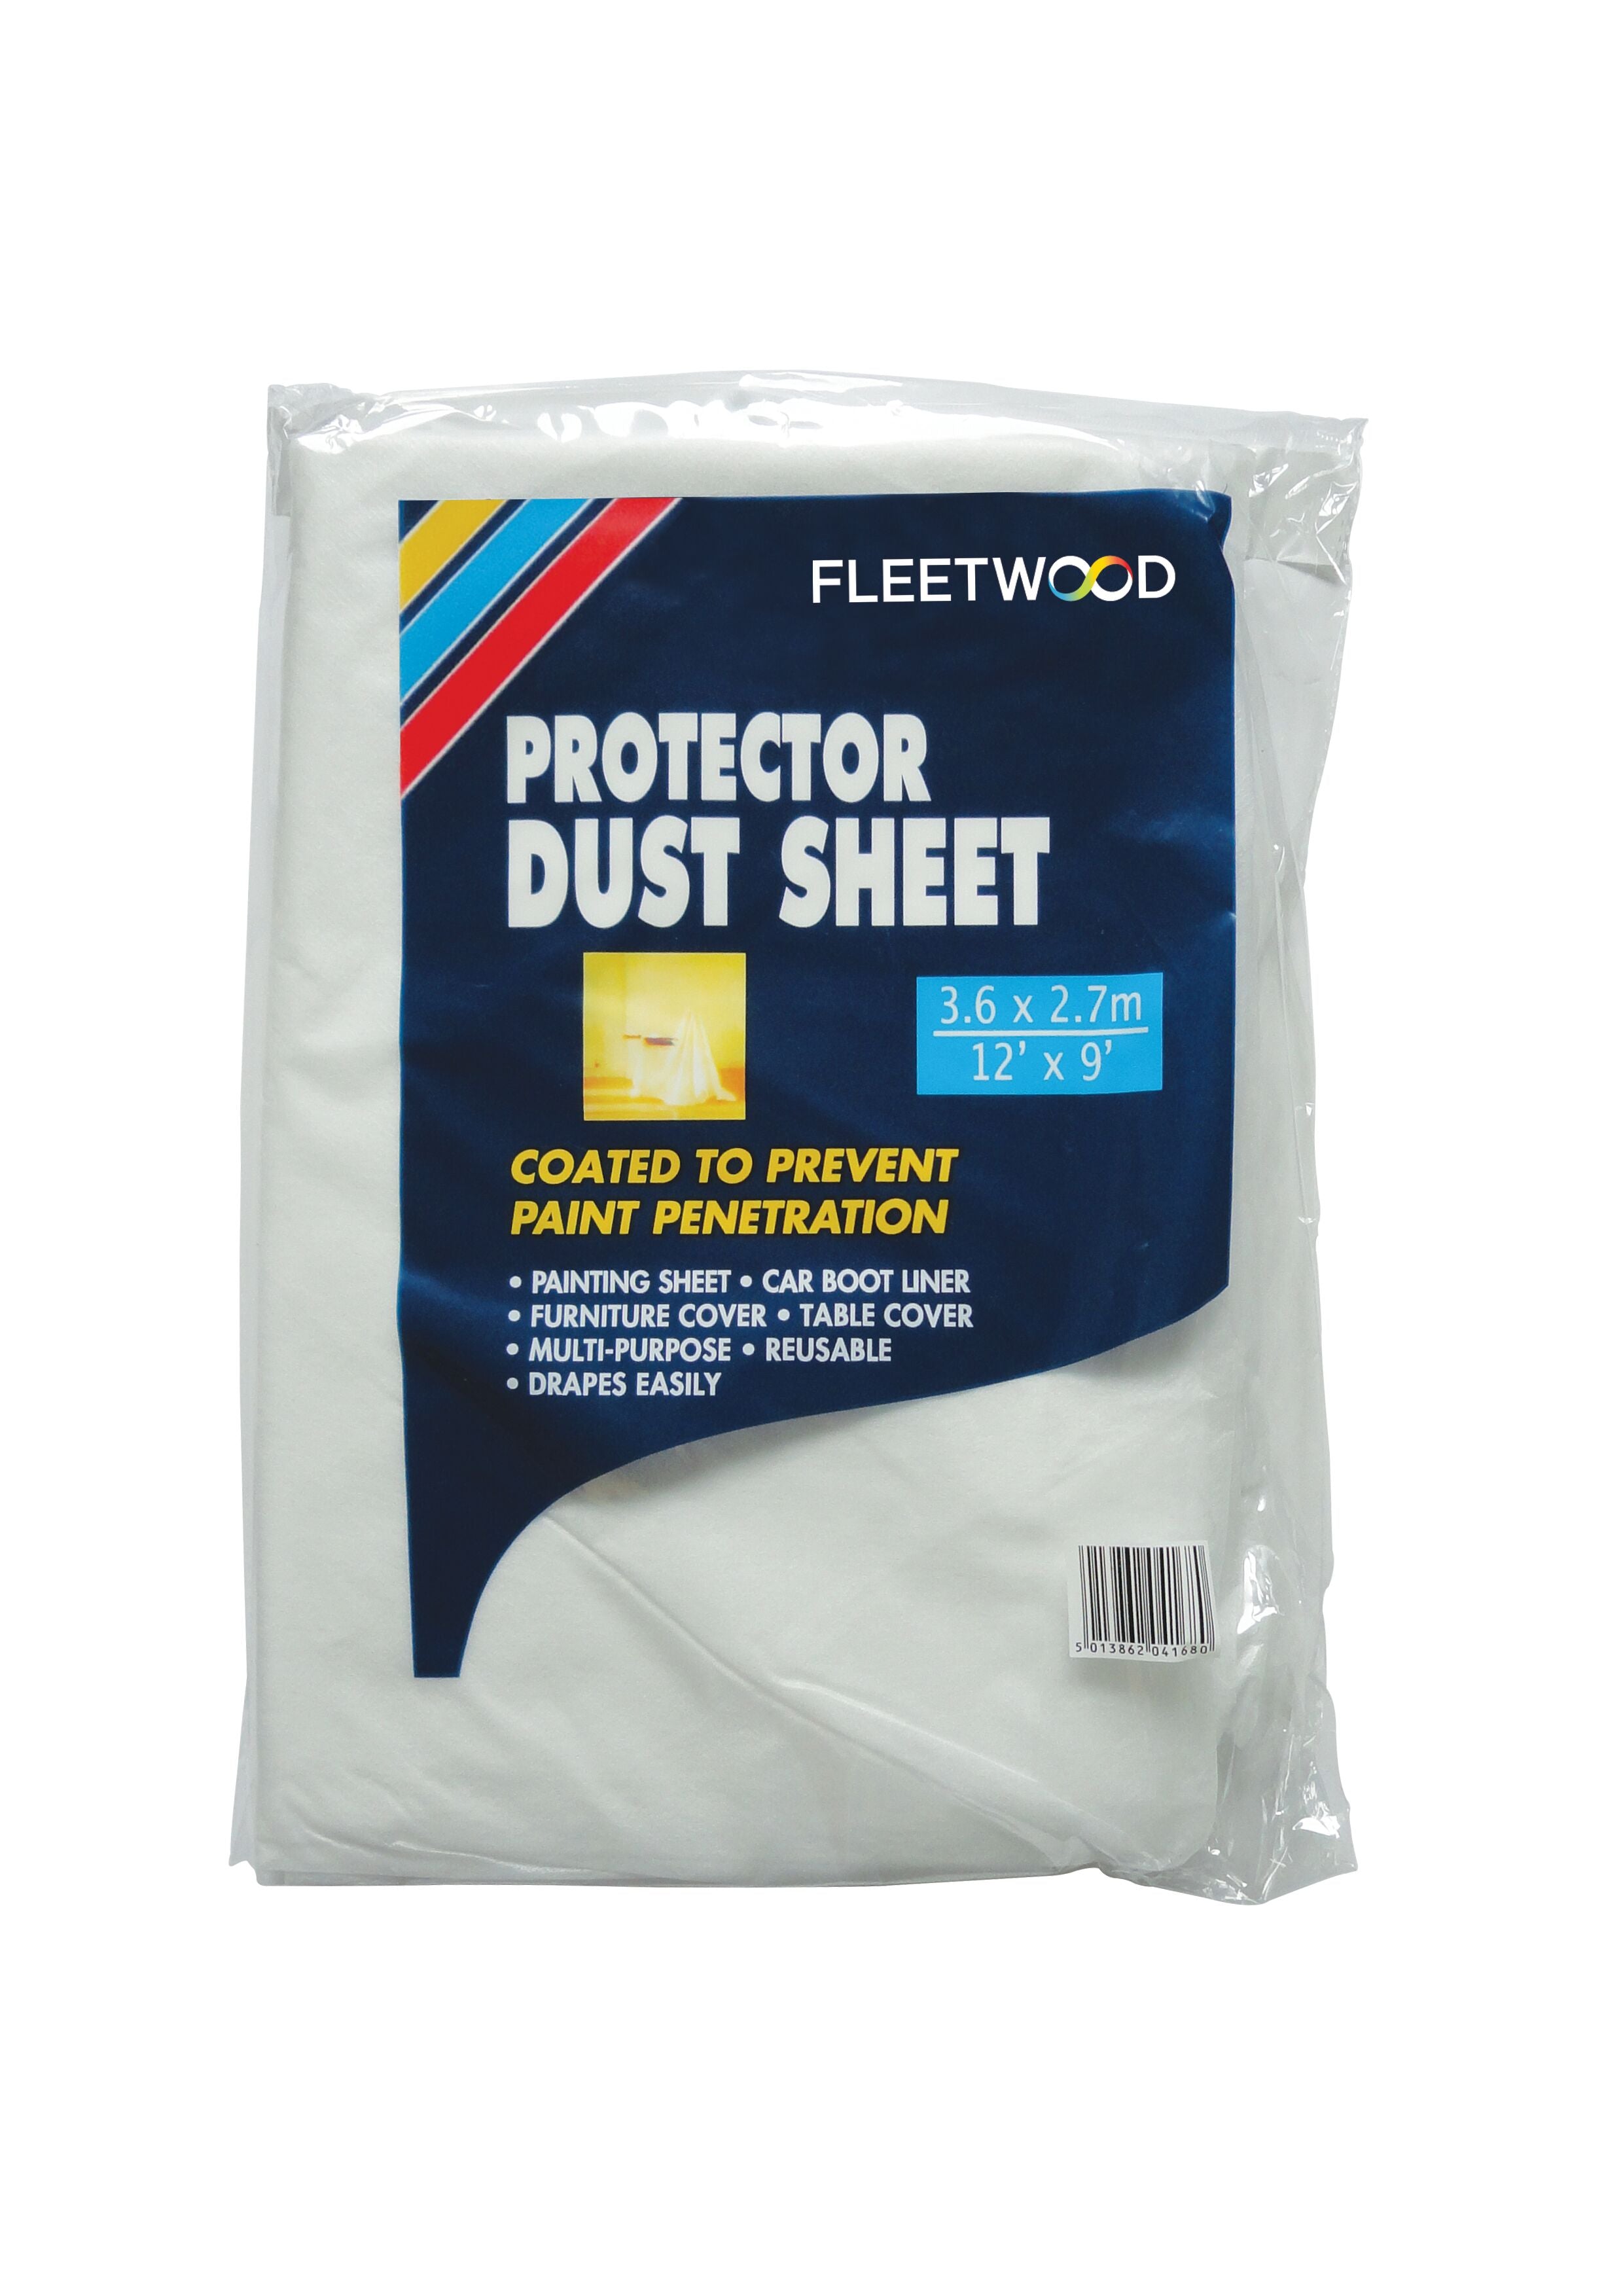 Fleetwood Protector Dust Sheet 12' x 9'